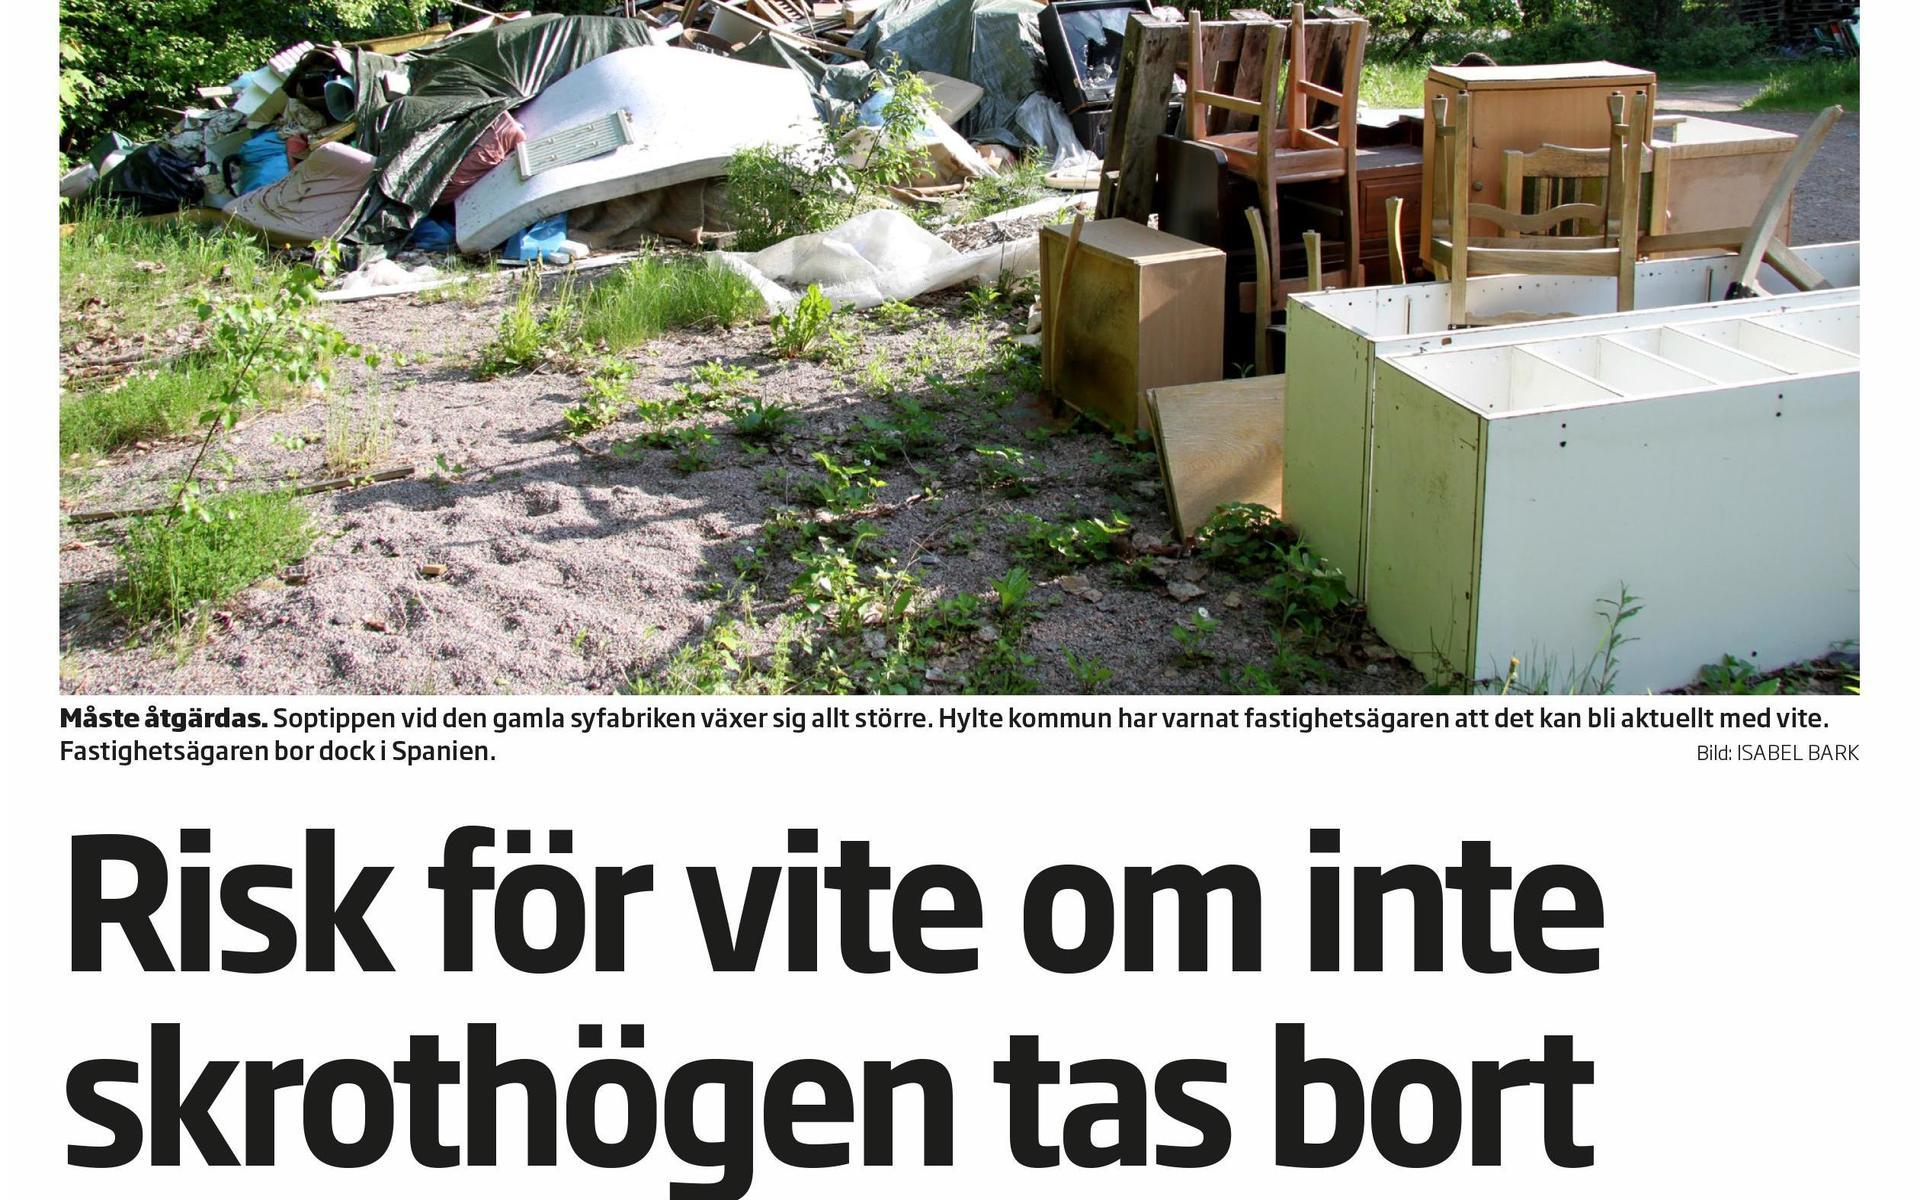 Den 10 juni 2013 skrev Hallandsposten att fastighetsägaren till den gamla syfabrikstomten i Rydöbruk skulle bli tvungen att betala vite. På den tiden var det John Henriksen som ägde fastigheten.